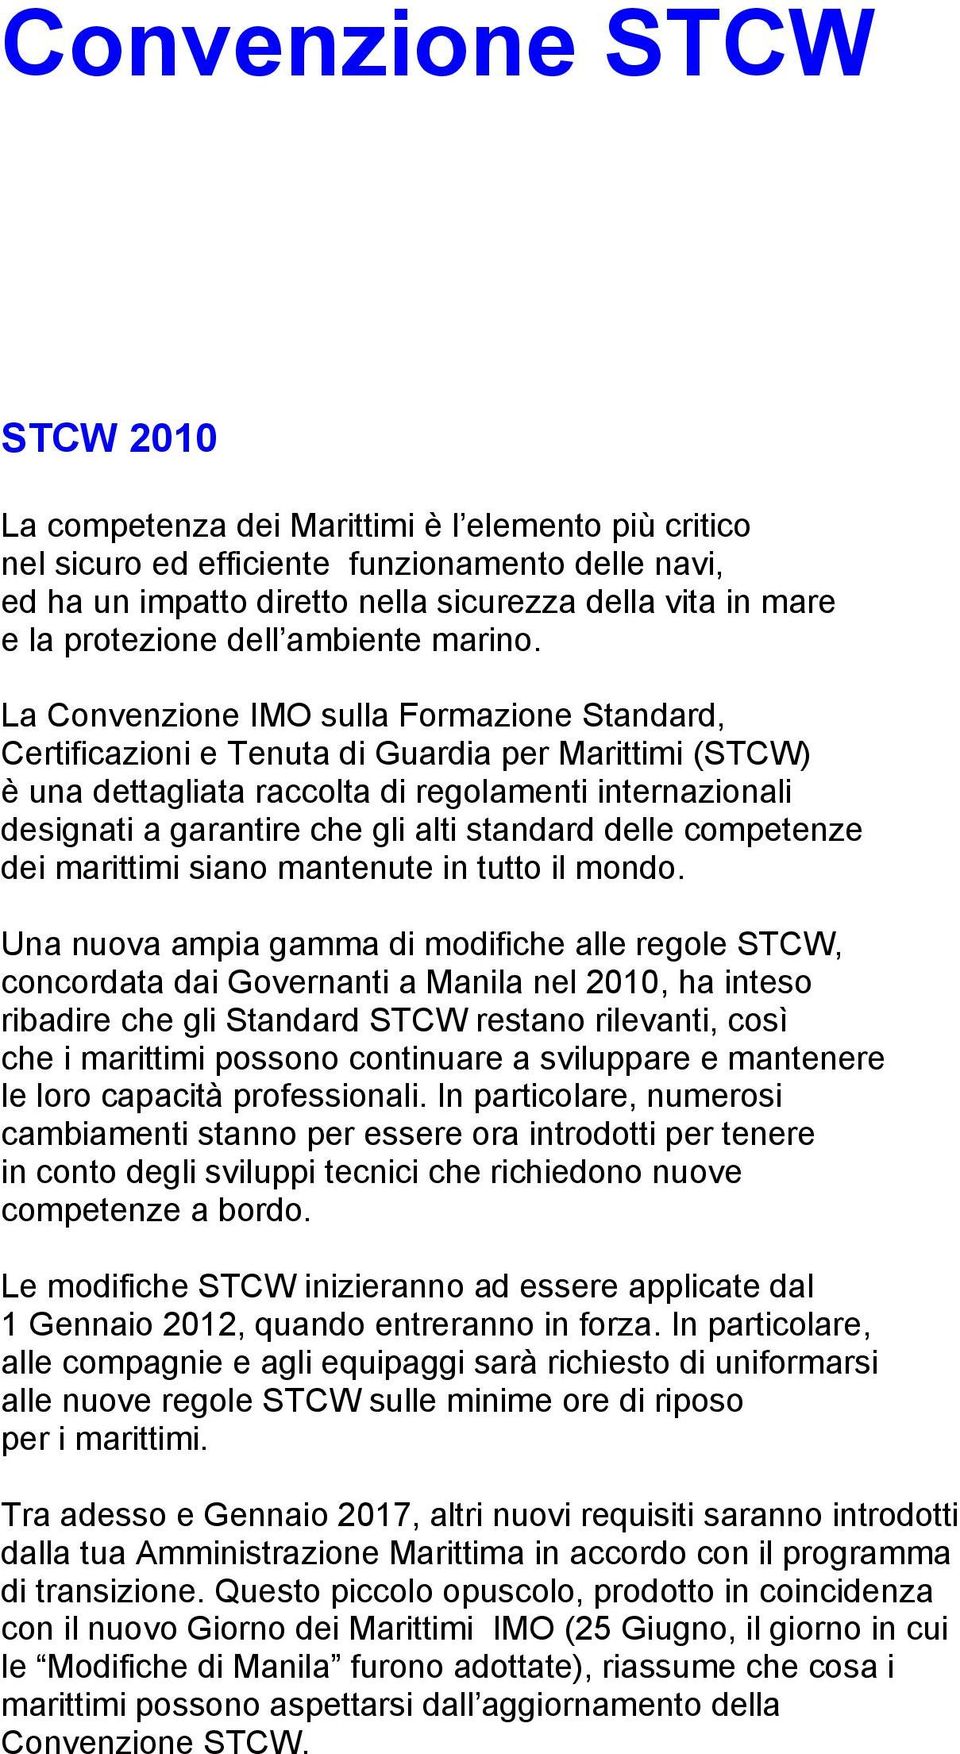 La Convenzione IMO sulla Formazione Standard, Certificazioni e Tenuta di Guardia per Marittimi (STCW) è una dettagliata raccolta di regolamenti internazionali designati a garantire che gli alti